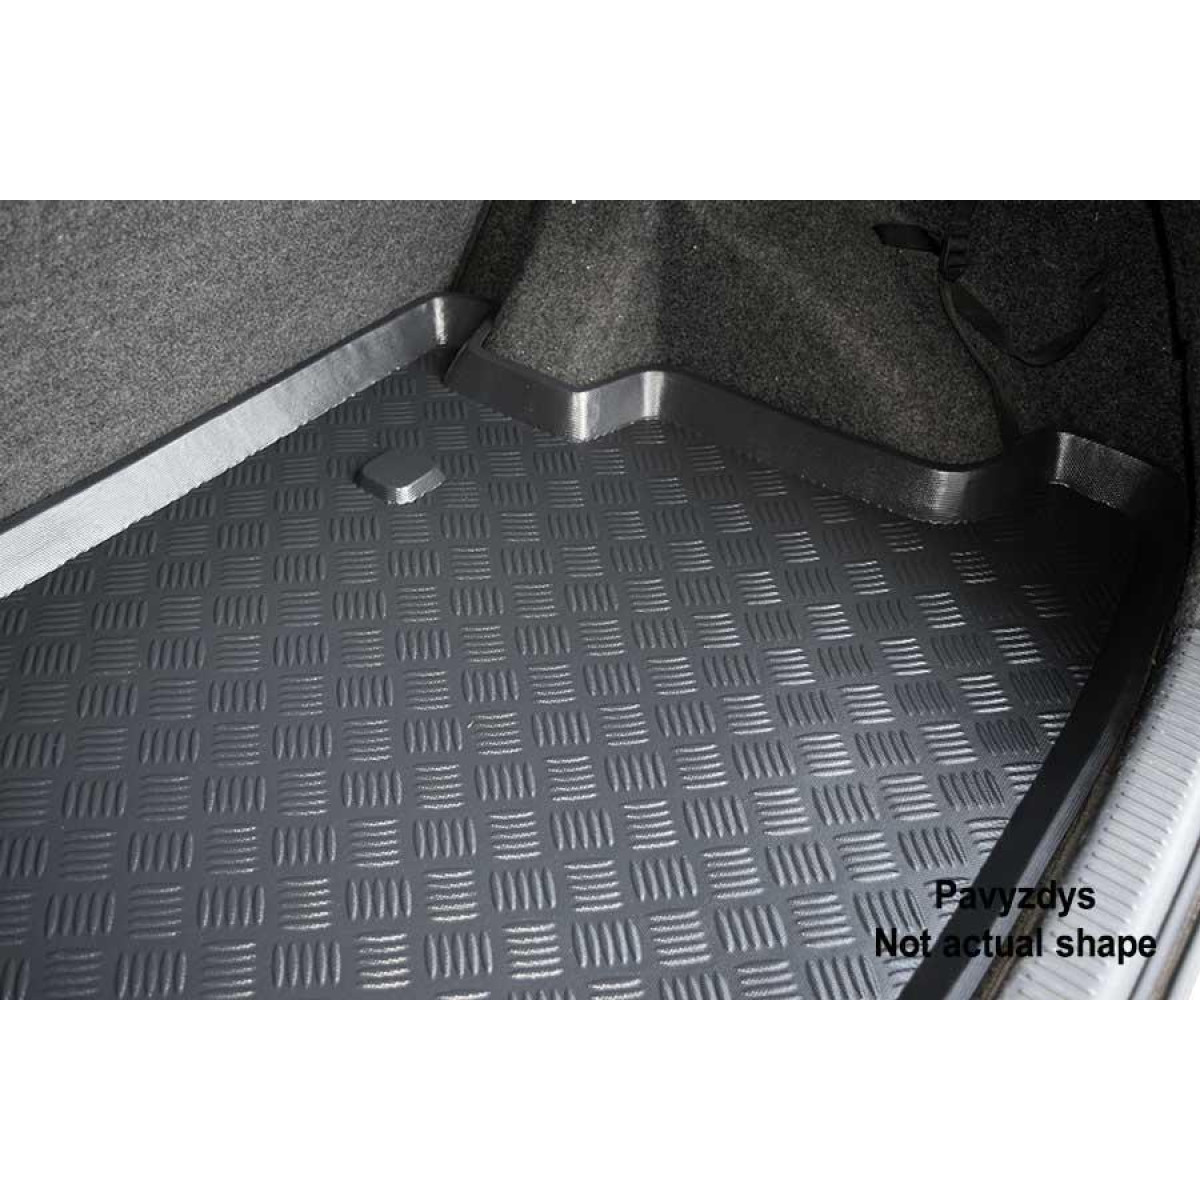 Plastikinis Bagažinės kilimėlis Suzuki SX4 S-Cross nuo 2013m. (viršutinis)